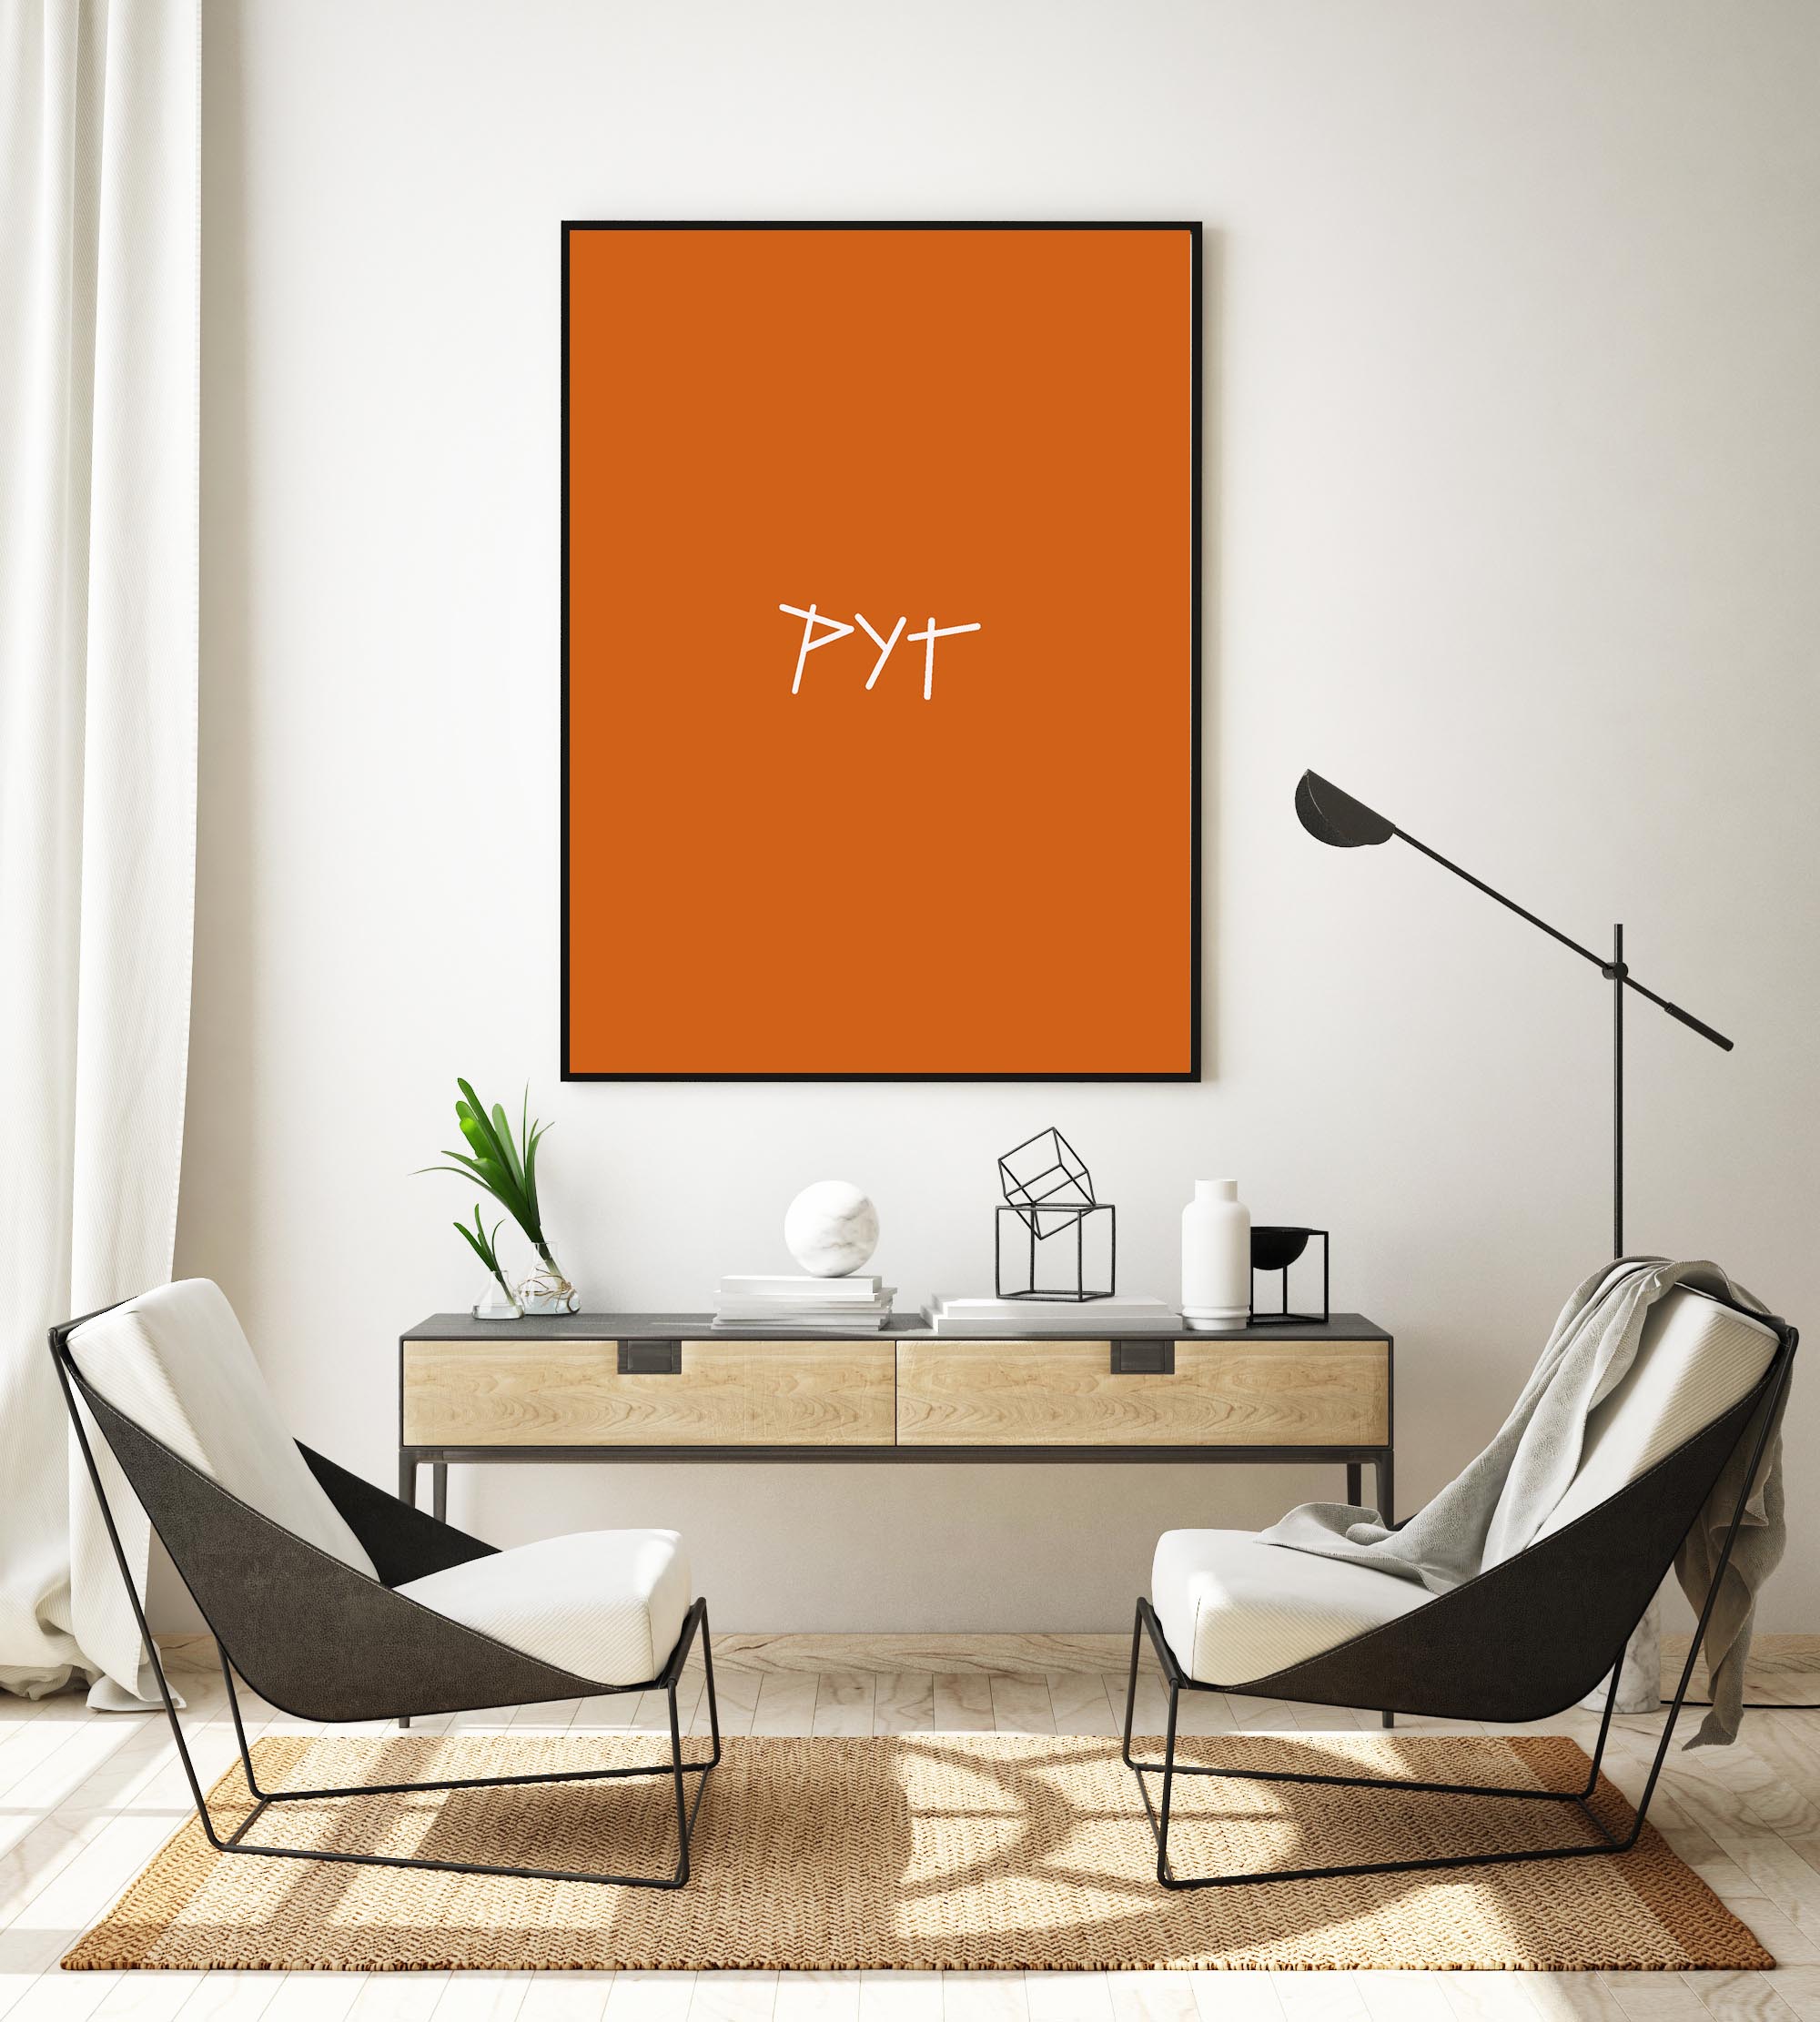 pitt-orange affisch